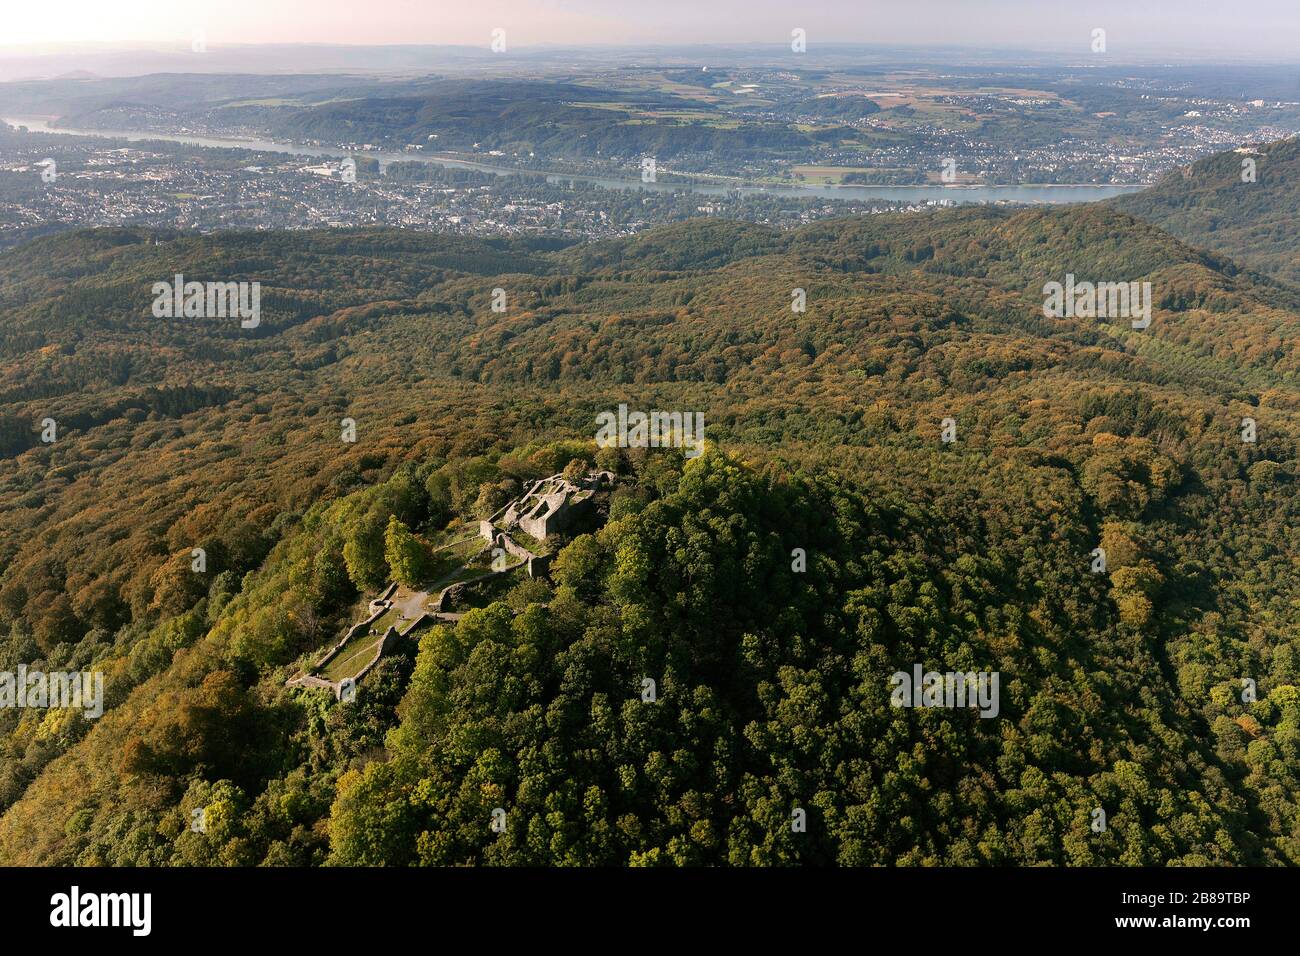 , ruins castle Loewenburg in the Siebengebirge near Bad Honnef, 25.09.2011, aerial view, Germany, North Rhine-Westphalia, Siebengebirge, Bad Honnef Stock Photo